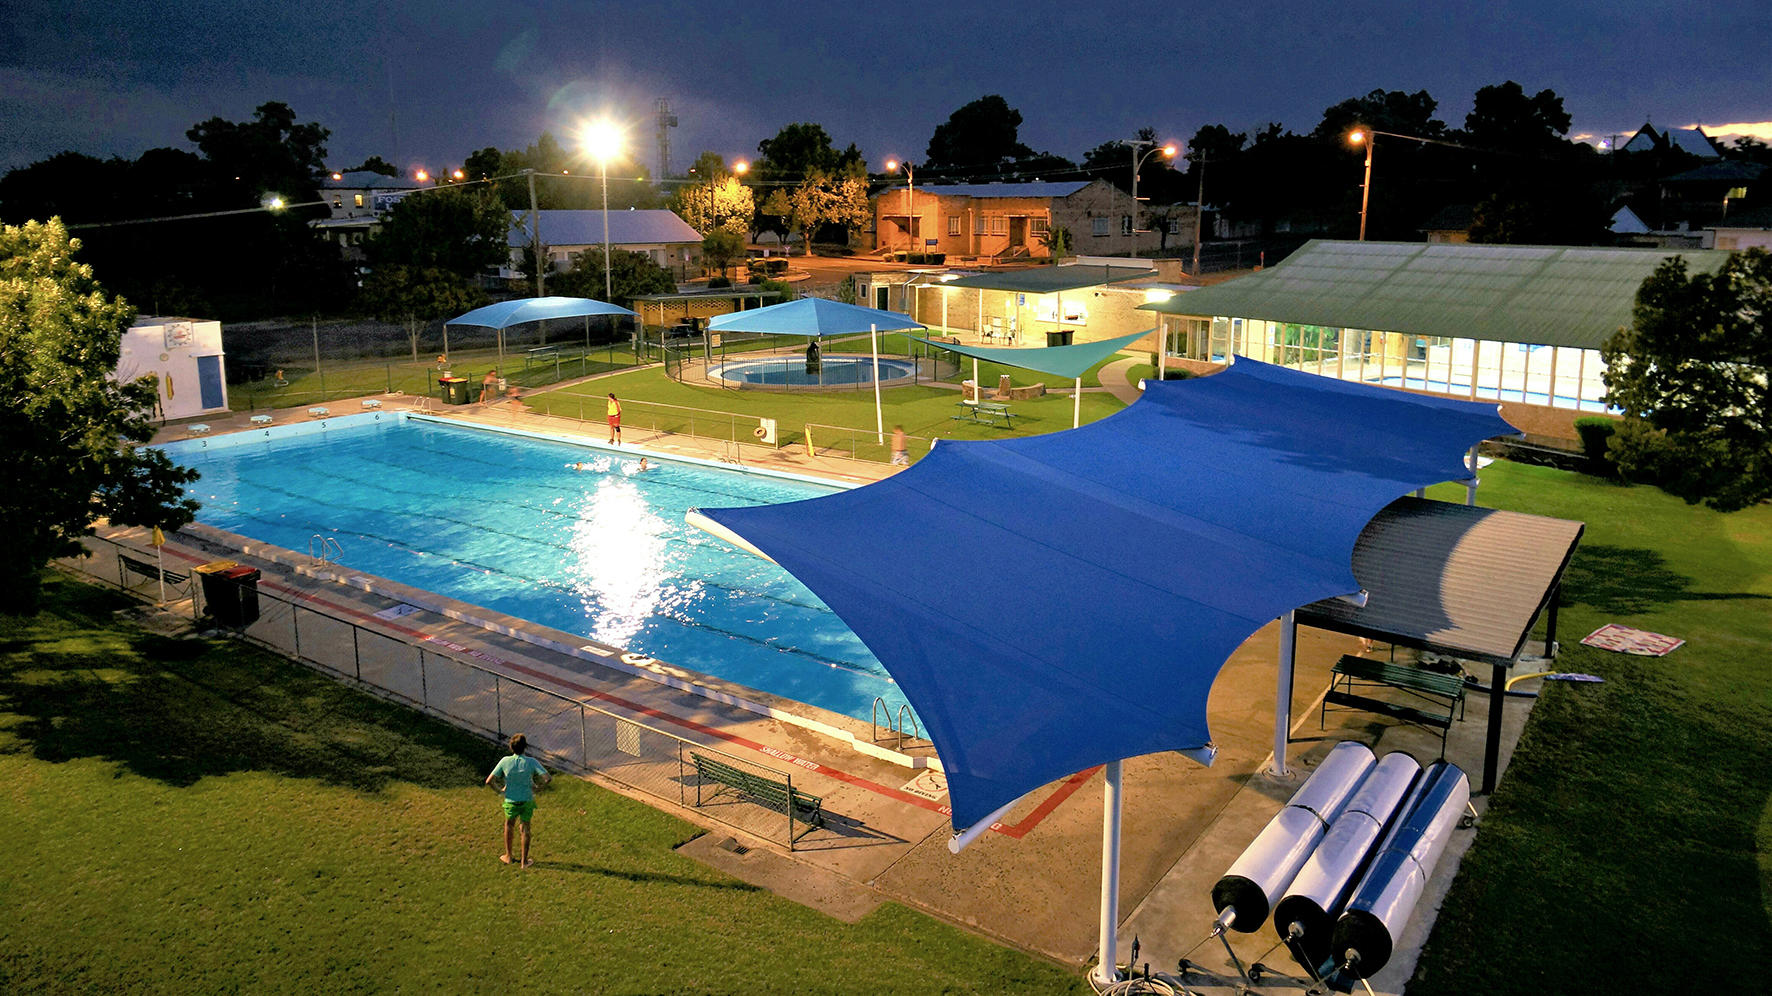 Images Barraba Memorial Swimming Pool